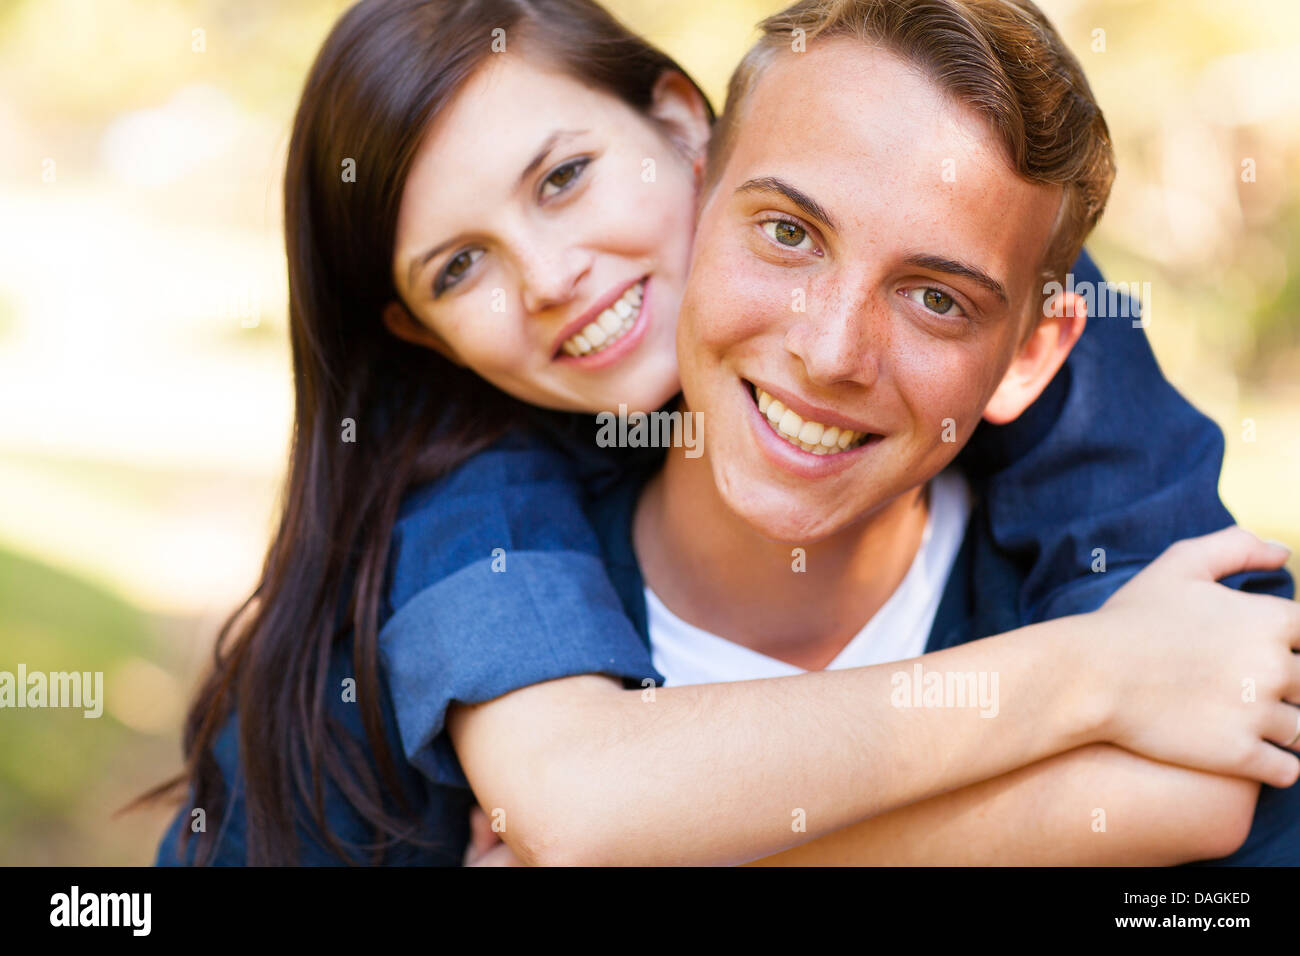 close up portrait of teenage couple enjoying summer day Stock Photo